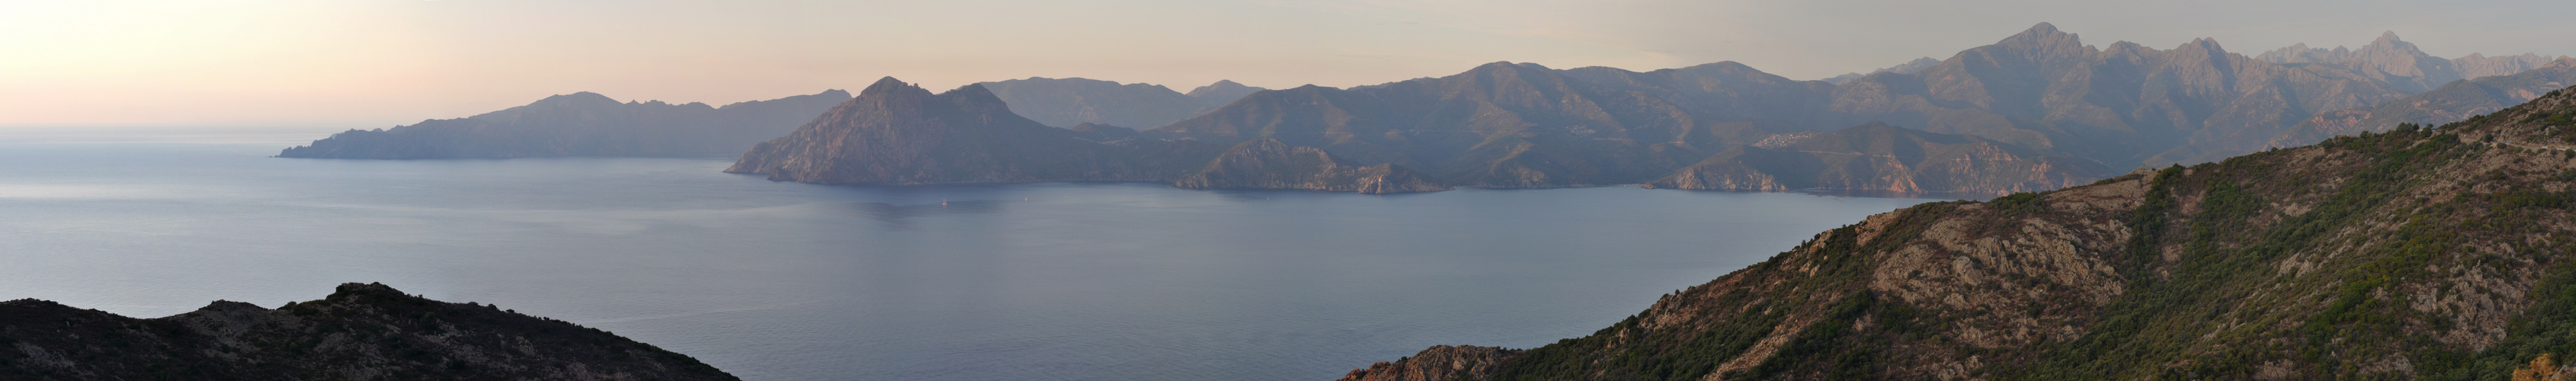 Korsika - Berge & Meer